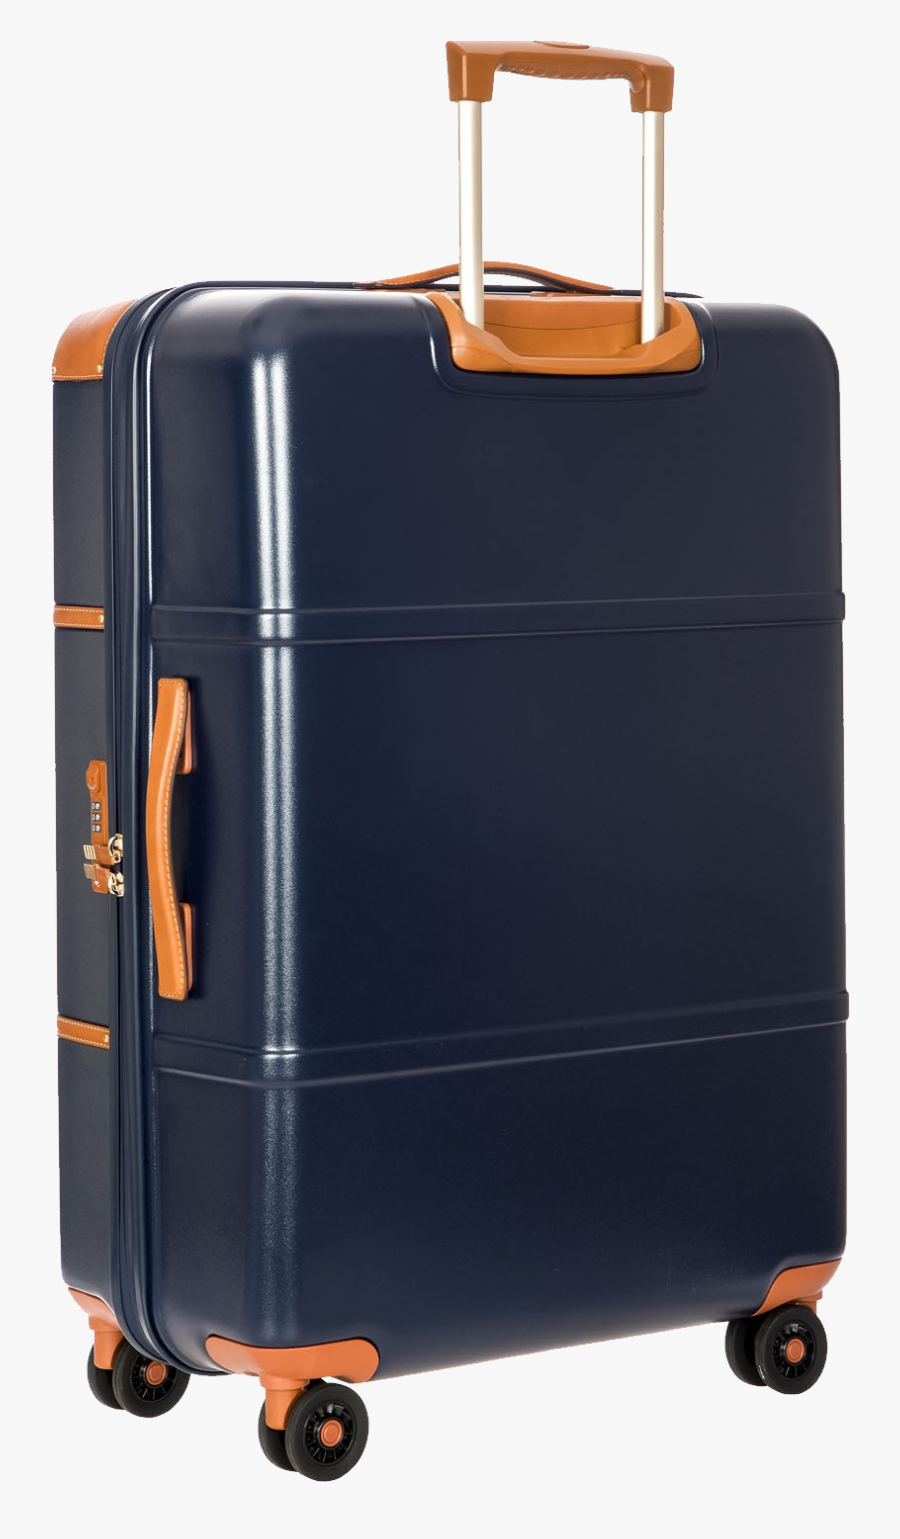 Suitcase, Suitcases - Suitcase - Travel Bag Png, Transparent Clipart